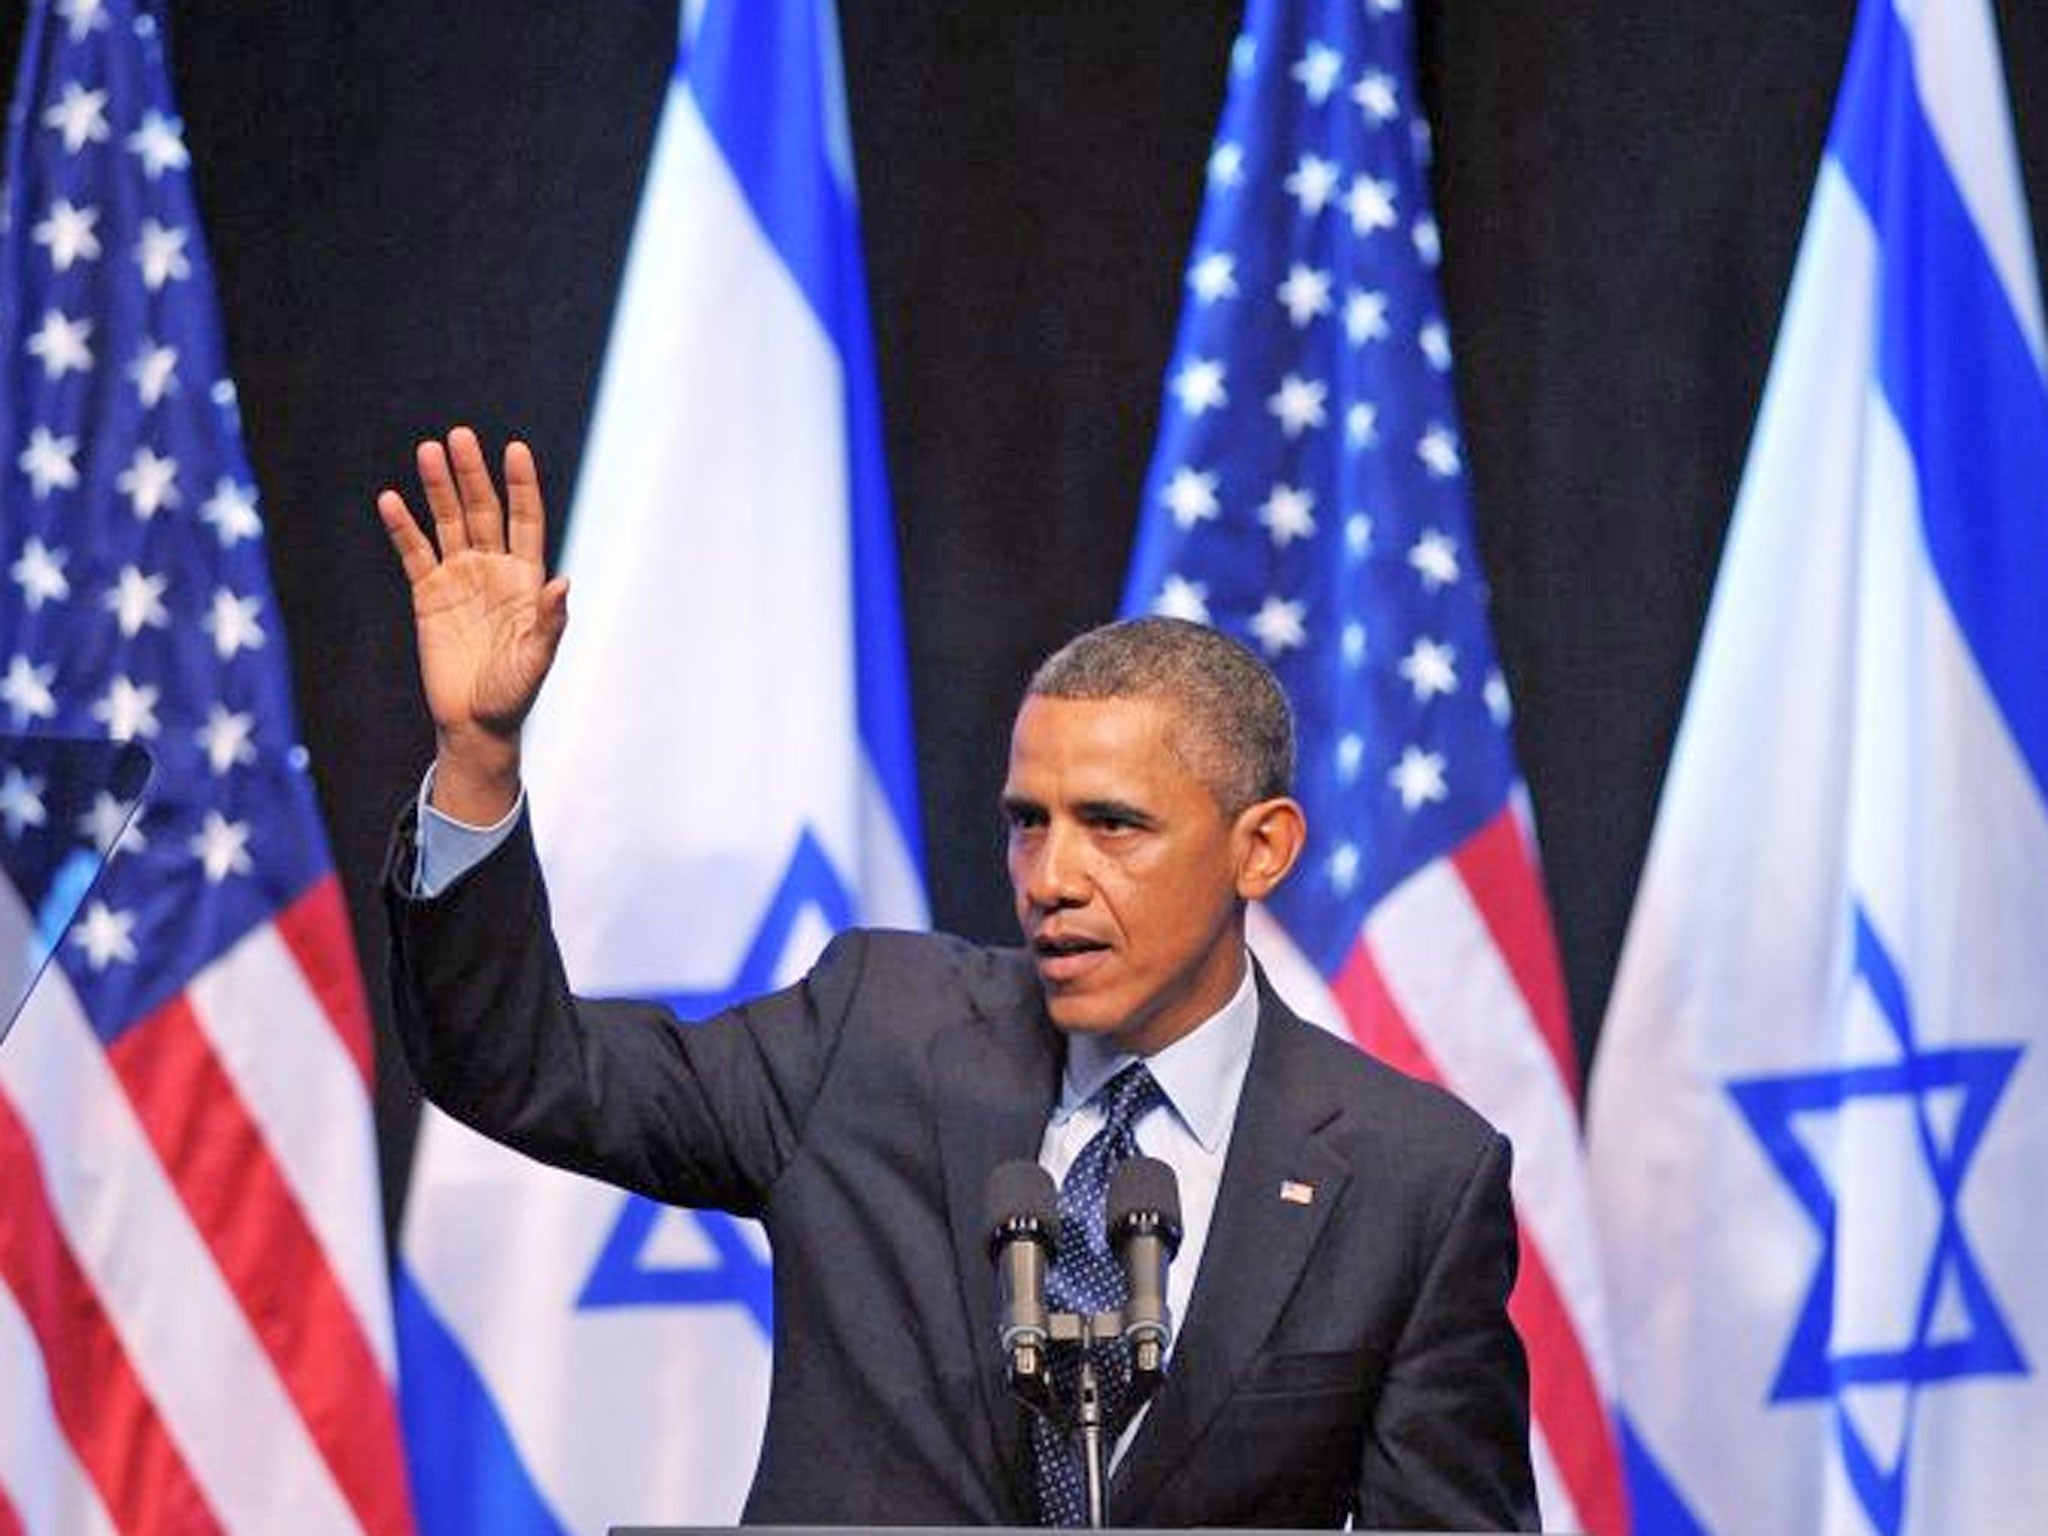 US President Barack Obama waves after delivering a speech to the Israeli people at the Jerusalem International Convention Center in Jerusalem